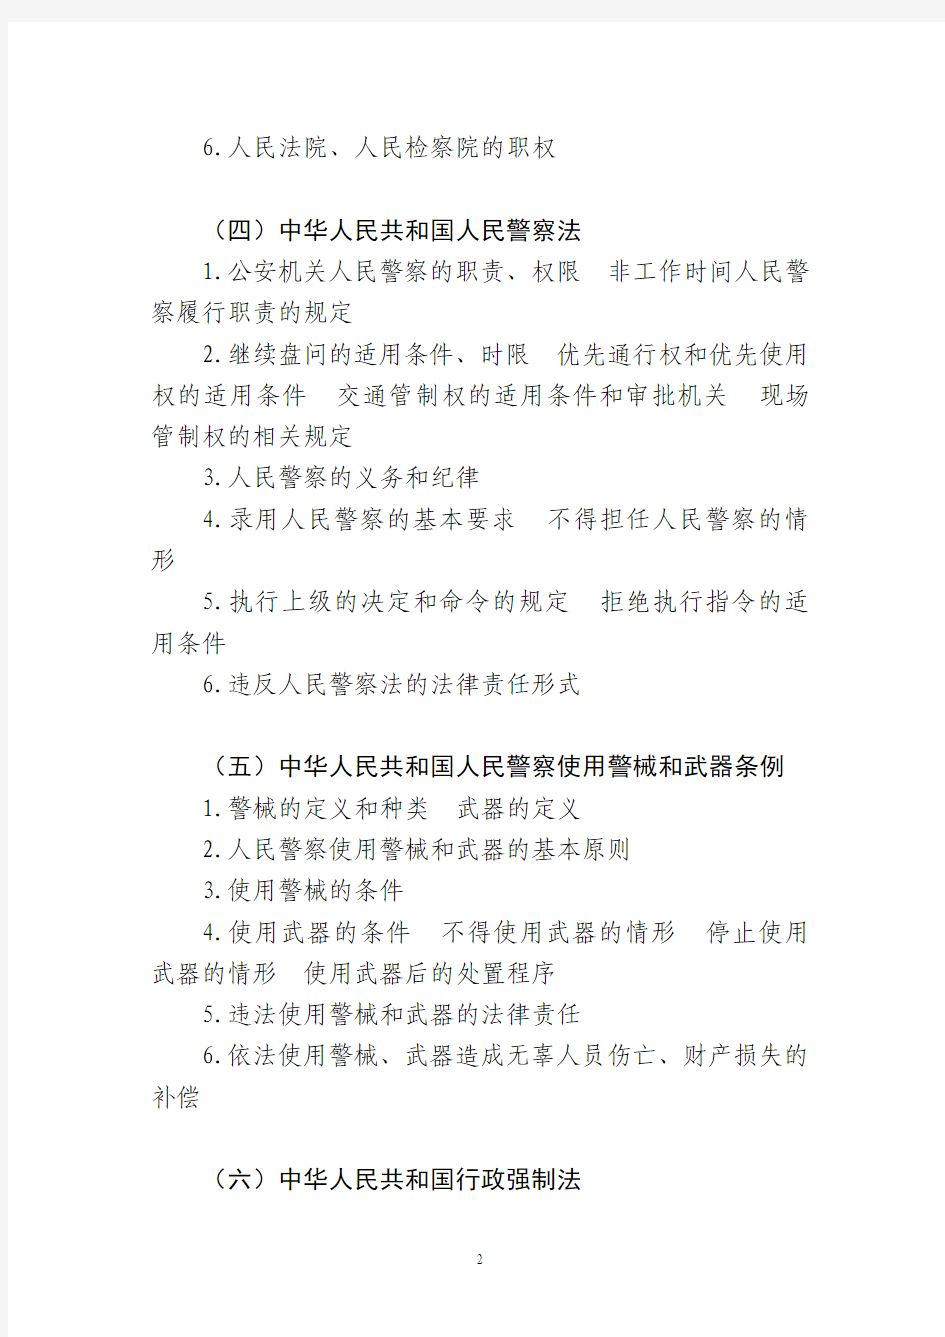 2015年河南省统一考试录用公安机关人民警察公安专业科目考试大纲